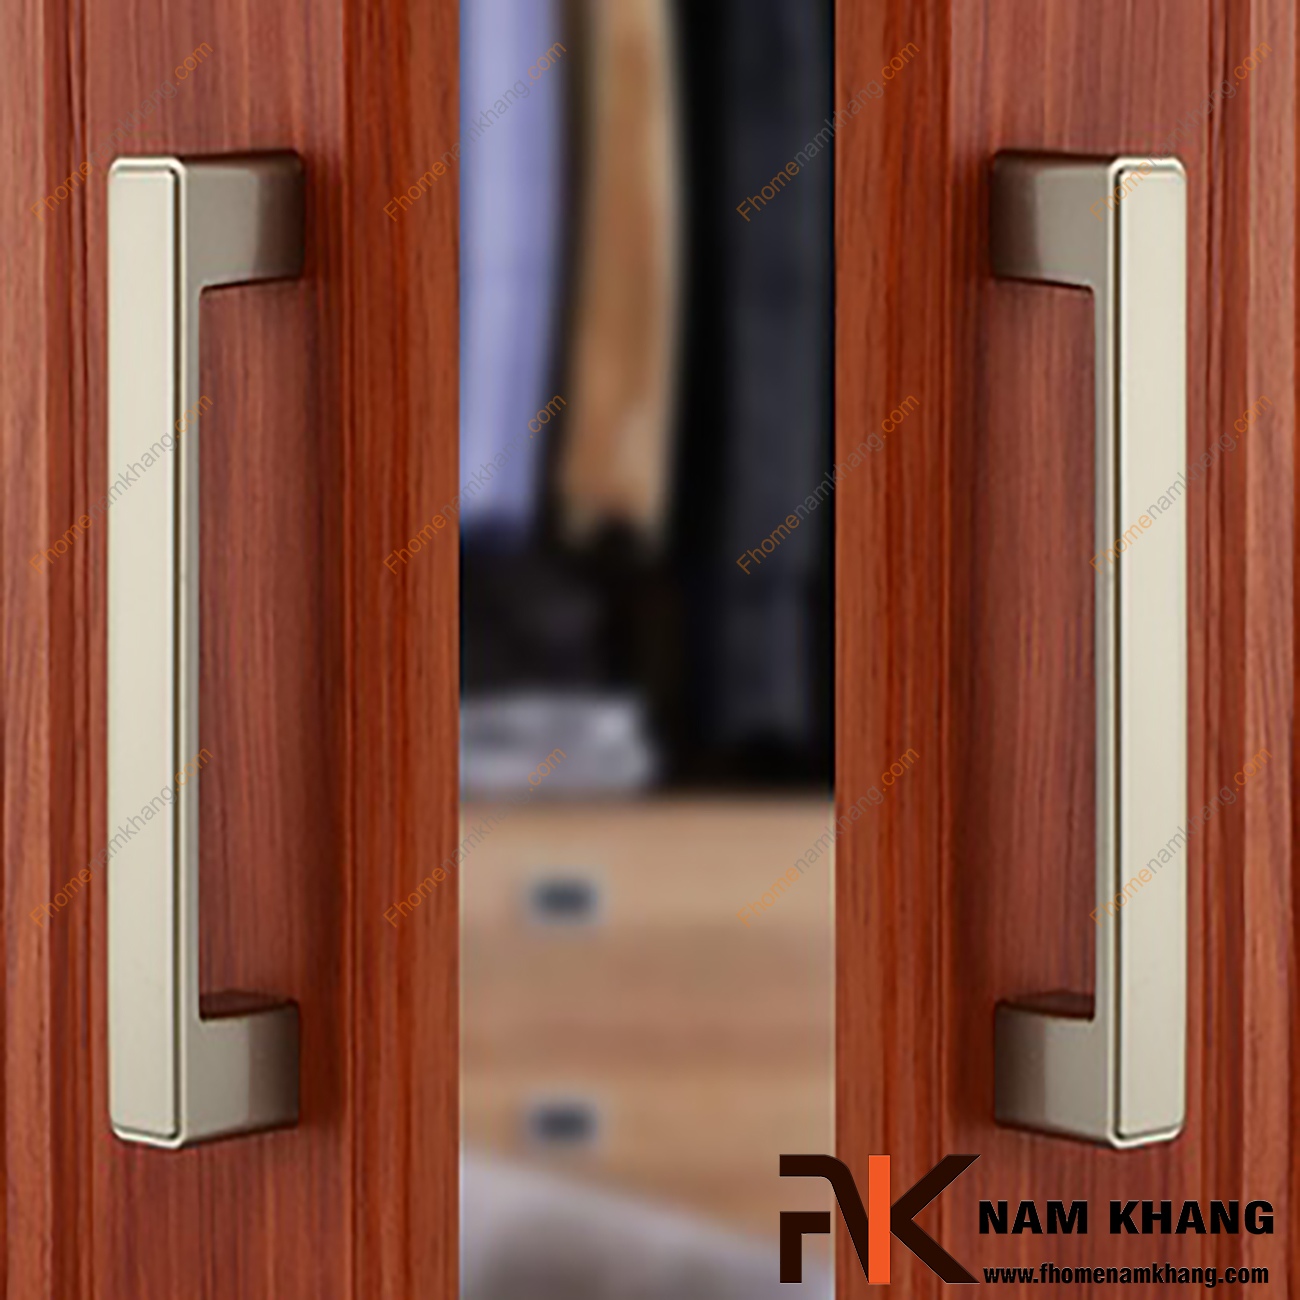 Tay nắm cửa tủ hiện đại màu đồng rêu NK026-R dạng vuông được thiết kế dựa trên hợp kim chất lượng khuôn dạng vuông tạo cảm giác cầm nắm vô cùng chắc chắn và thao tác thực hiện cũng vô cùng dễ dàng.